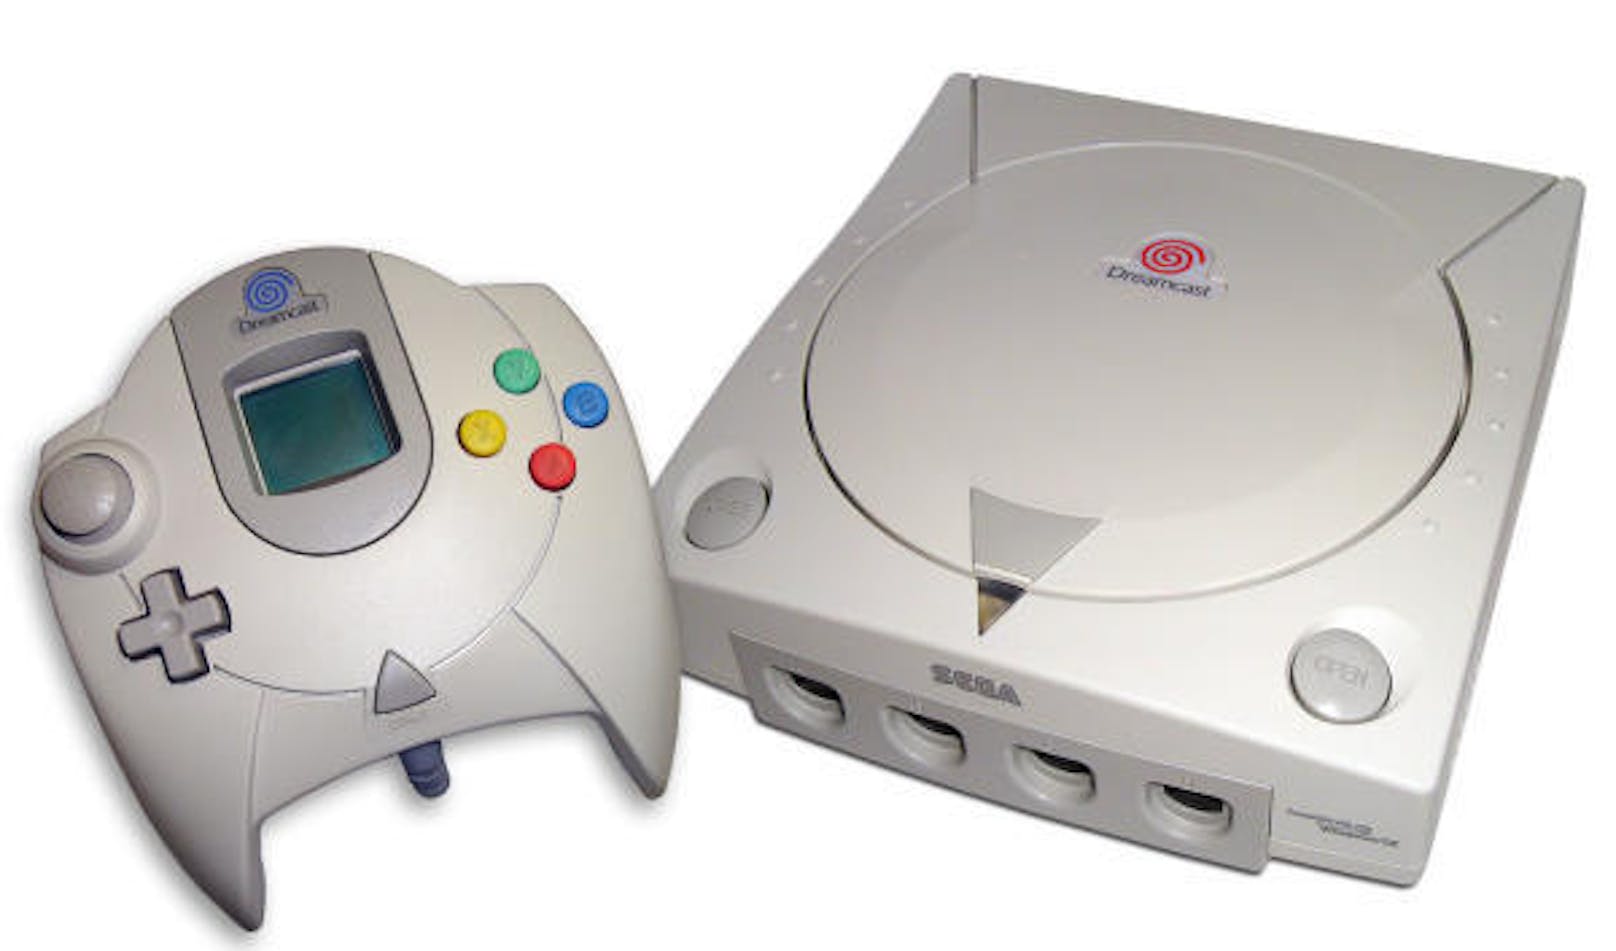 Guter Ansatz, aber zu einem schlechter Zeitpunkt veröffentlicht: Die Dreamcast bot ein paar tolle Spiele, hatte aber gegen die aufkommende Playstation 2 und die Xbox von Microsoft keine Chance. (Foto: Sega)